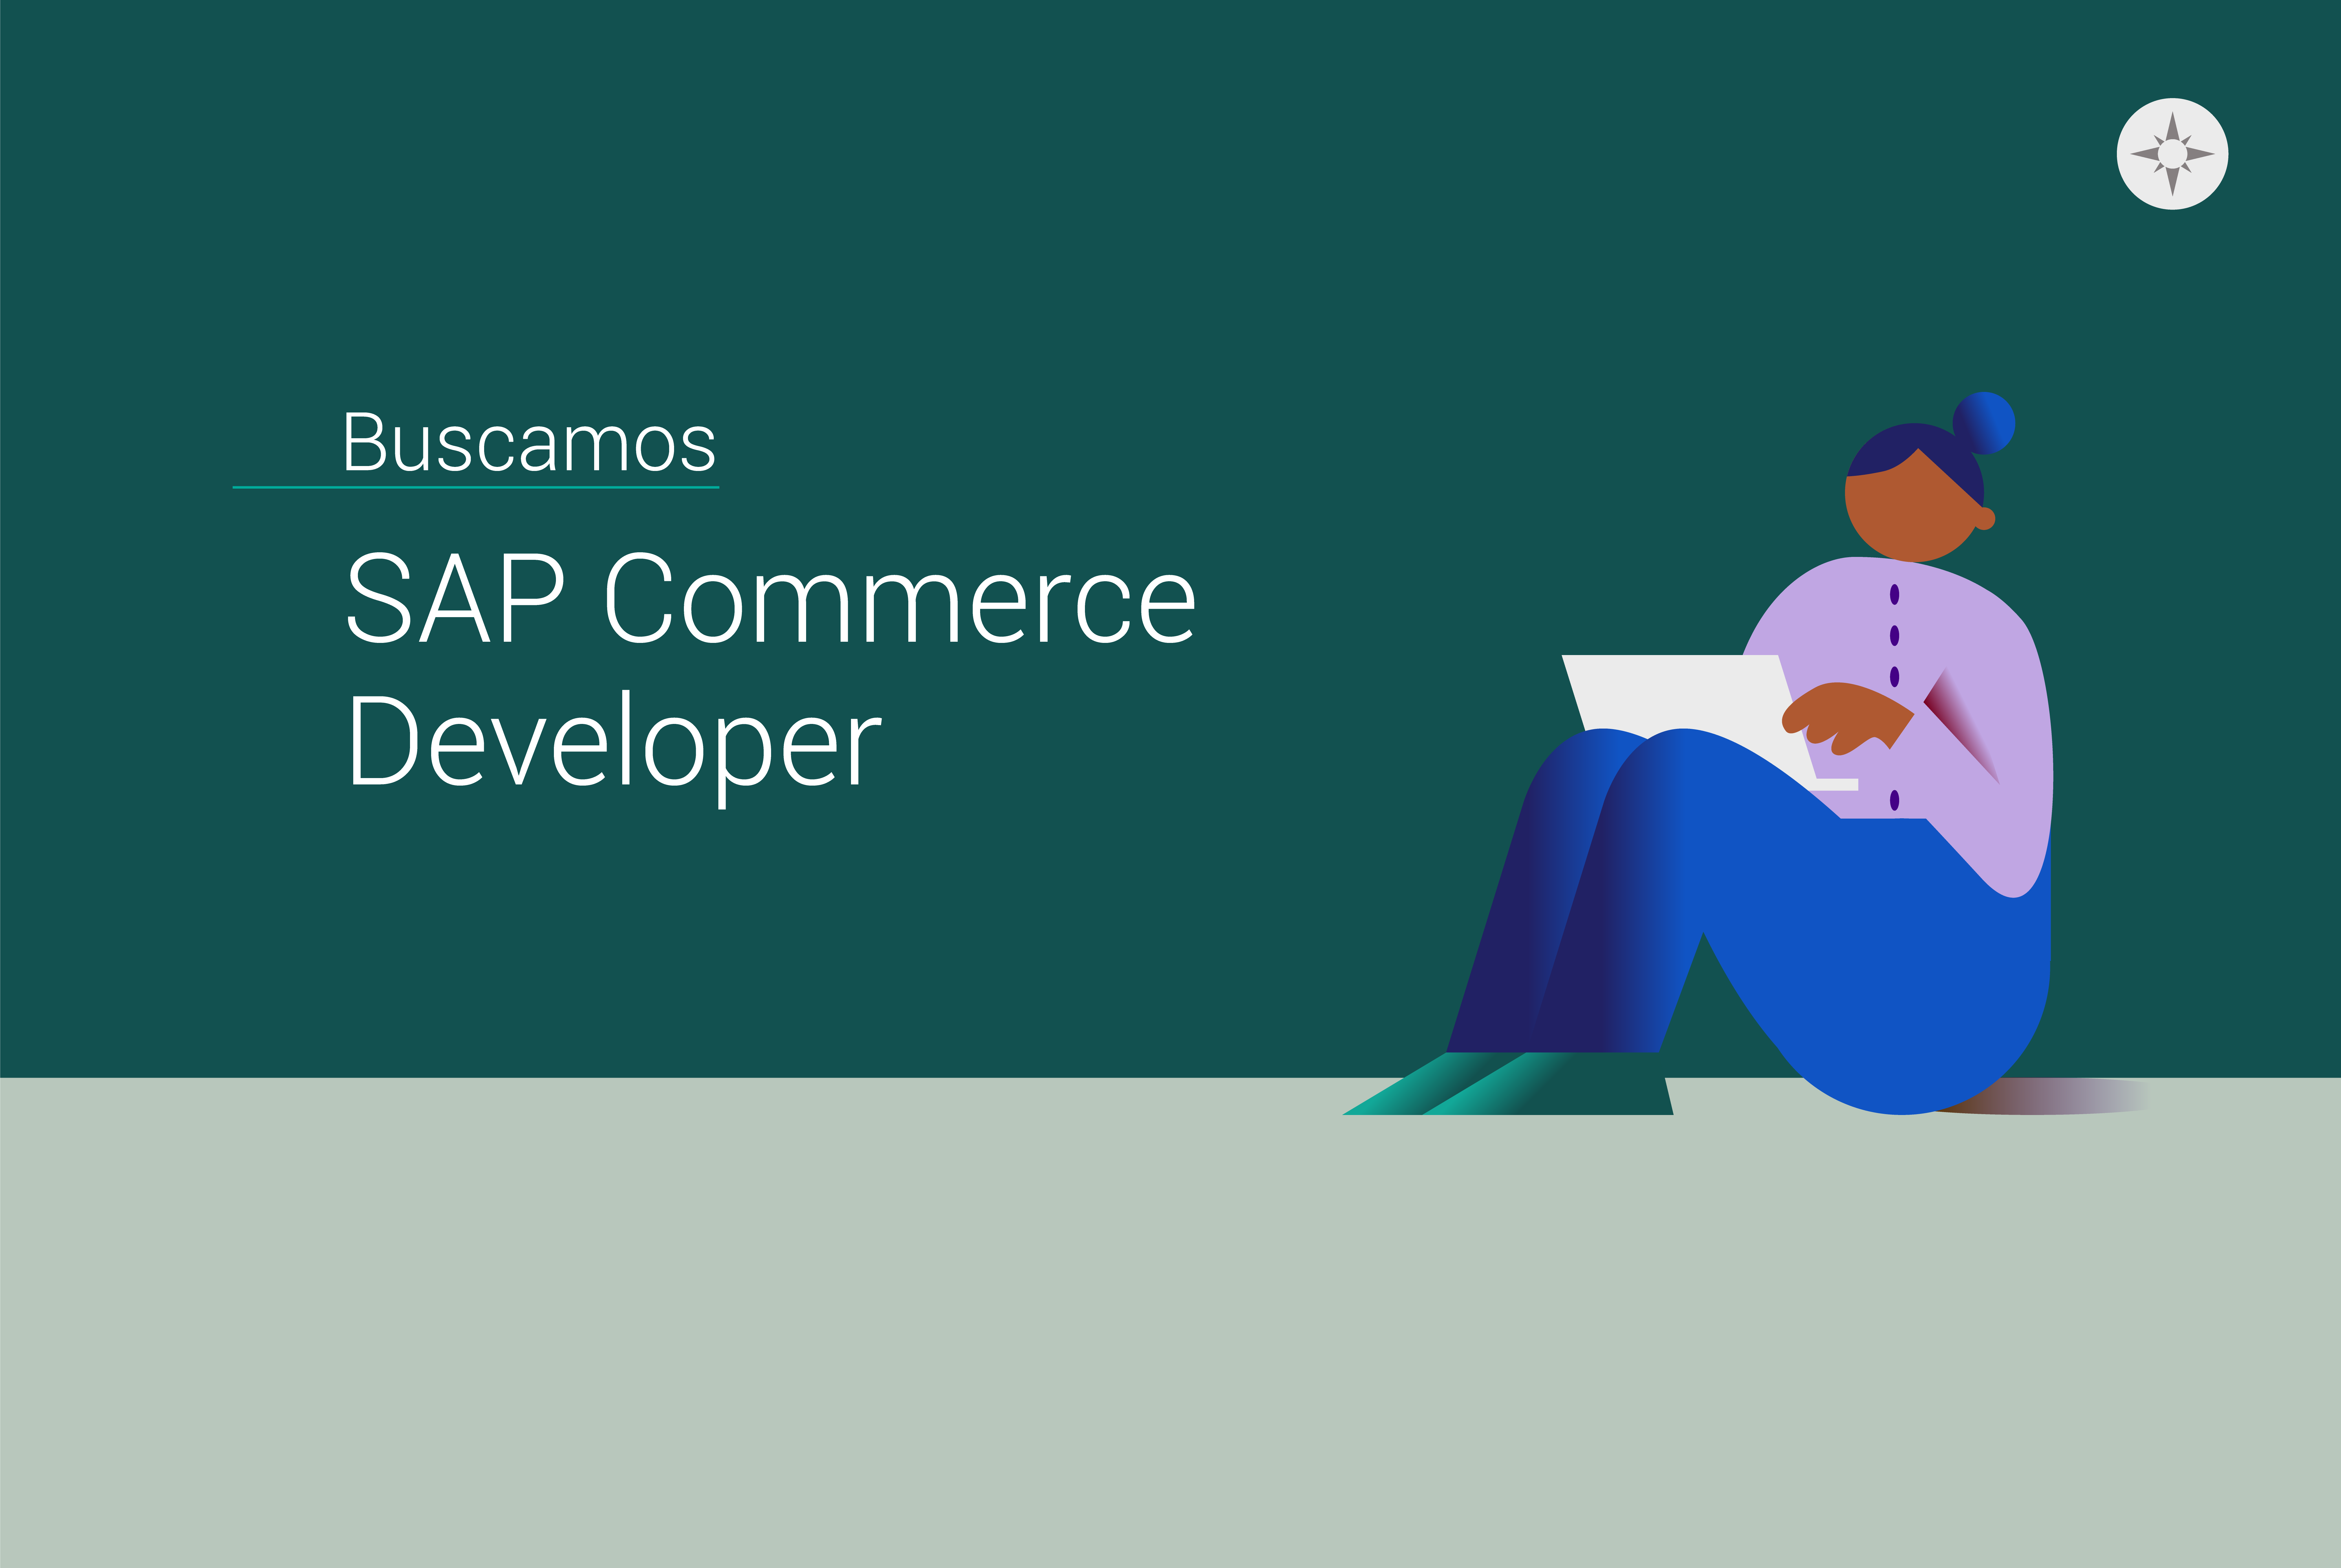 SAP Commerce Developer